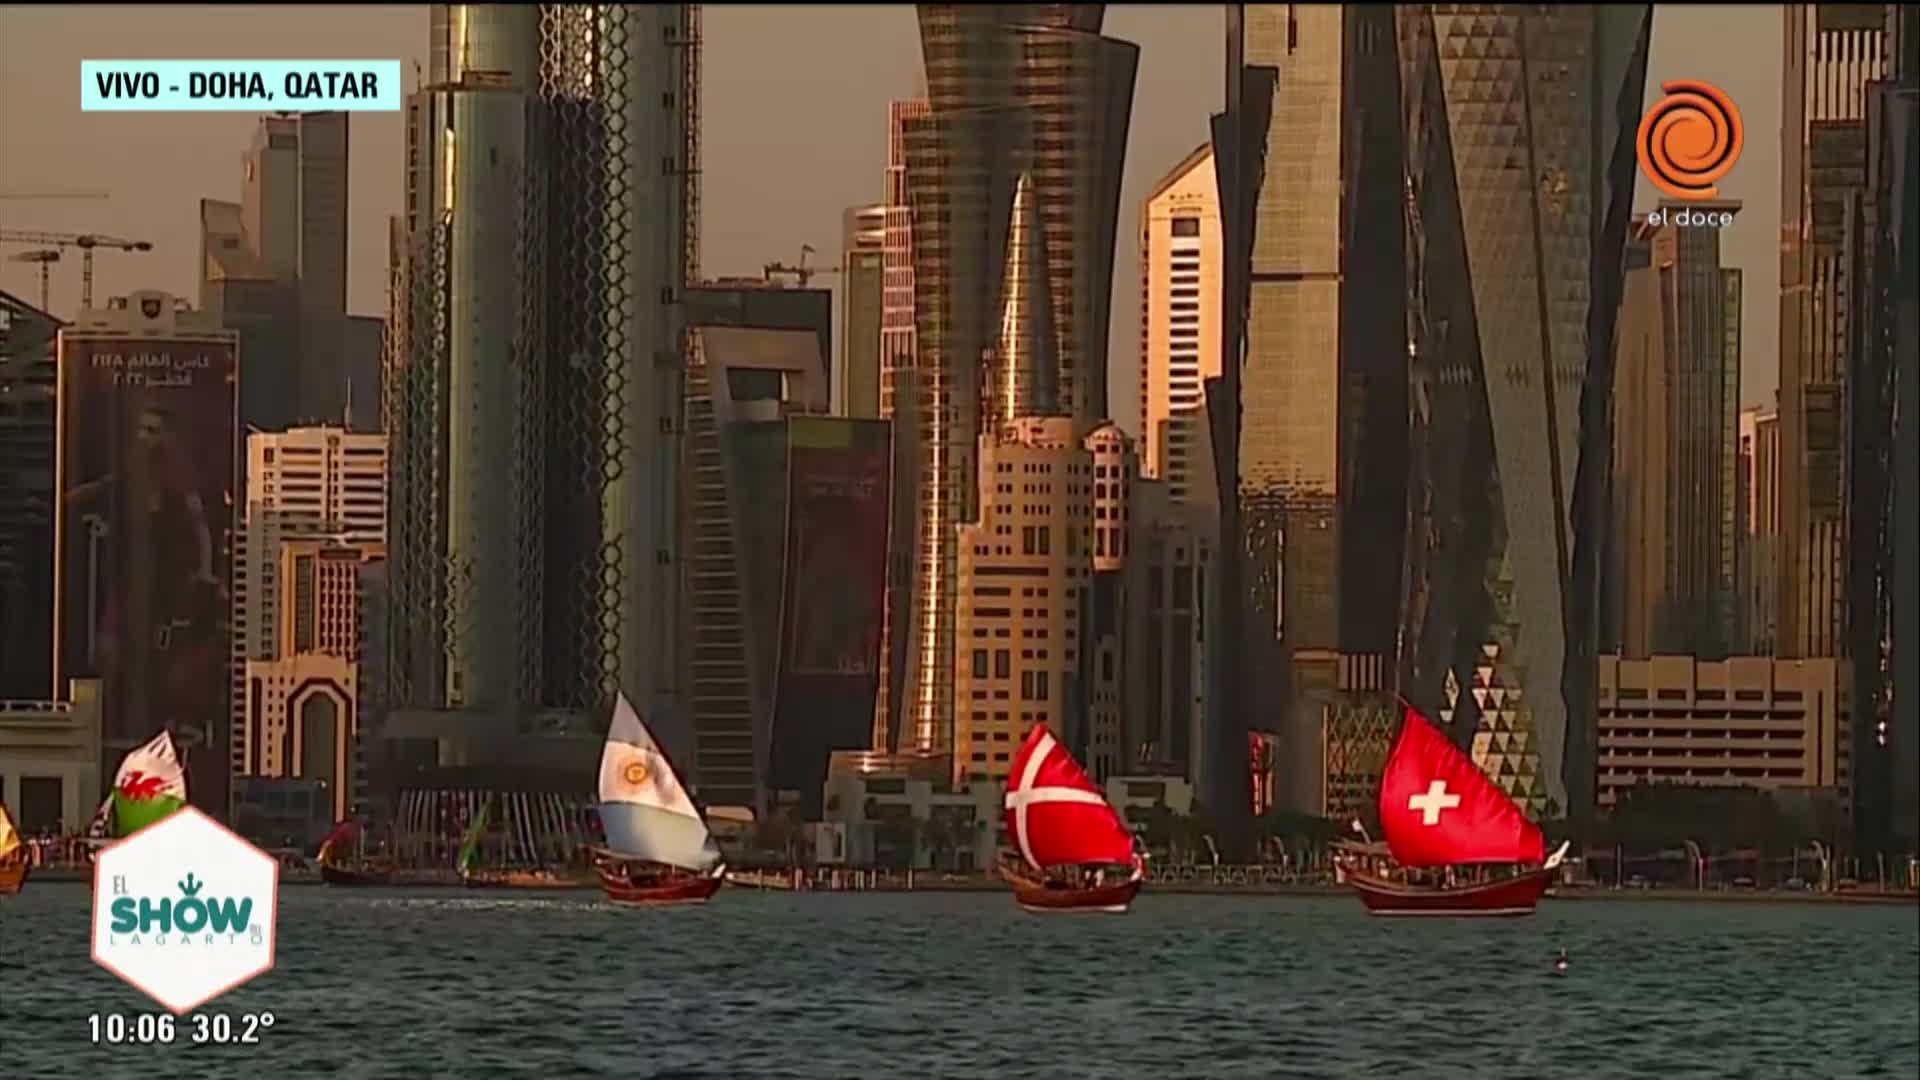 El espectáculo de los veleros en la bahía de Doha